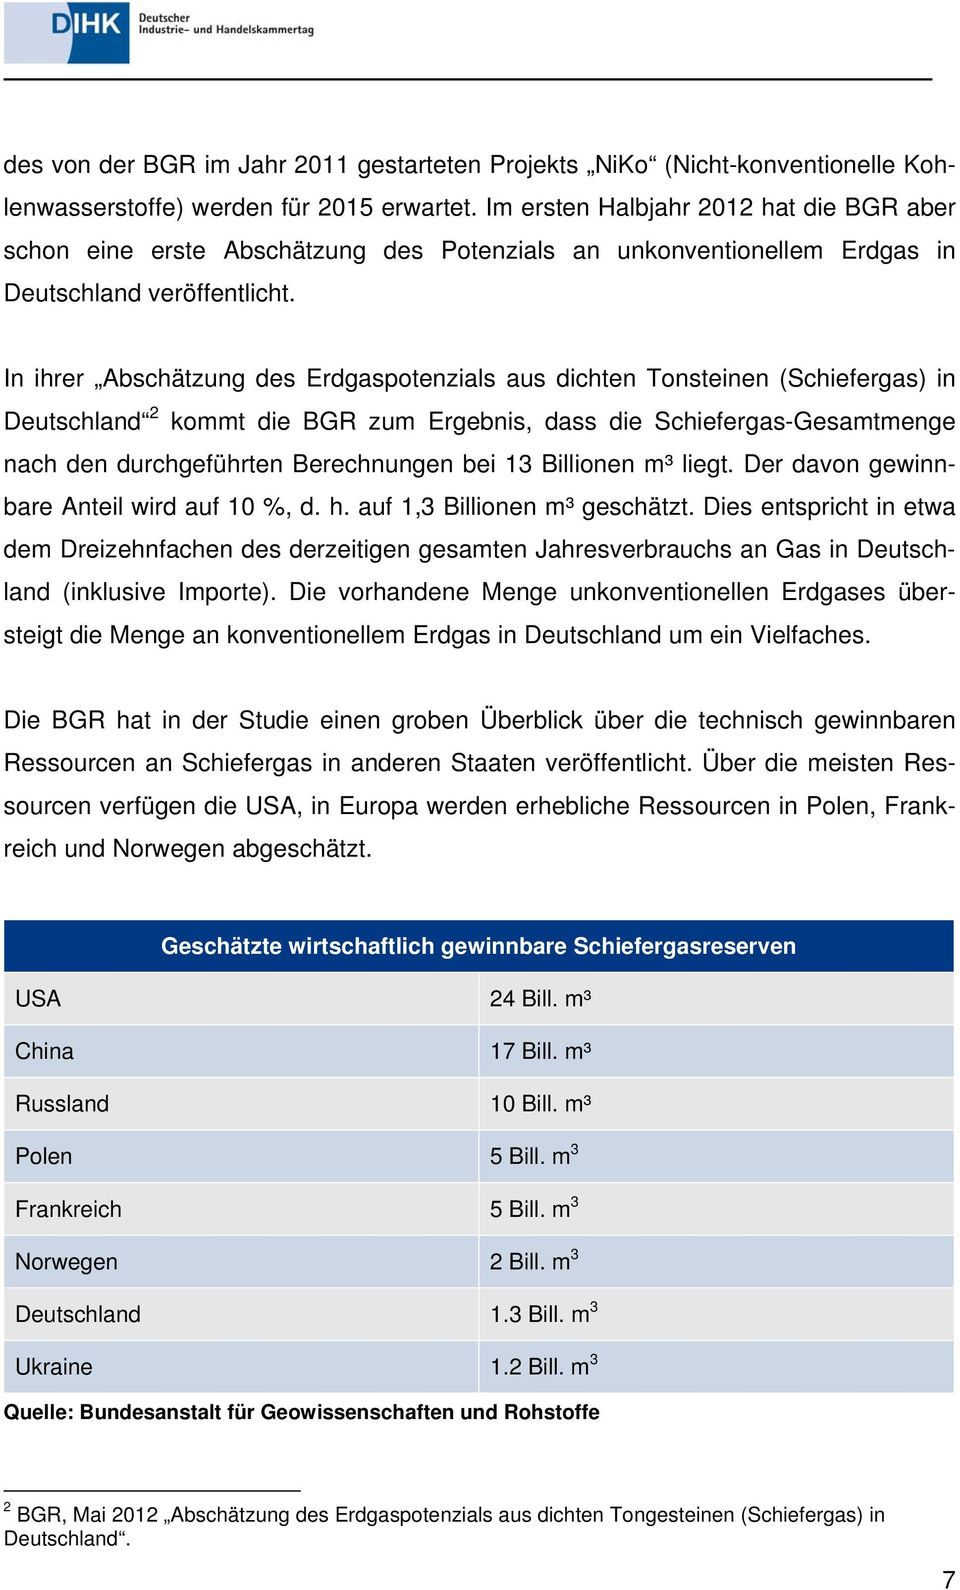 In ihrer Abschätzung des Erdgaspotenzials aus dichten Tonsteinen (Schiefergas) in Deutschland 2 kommt die BGR zum Ergebnis, dass die Schiefergas-Gesamtmenge nach den durchgeführten Berechnungen bei